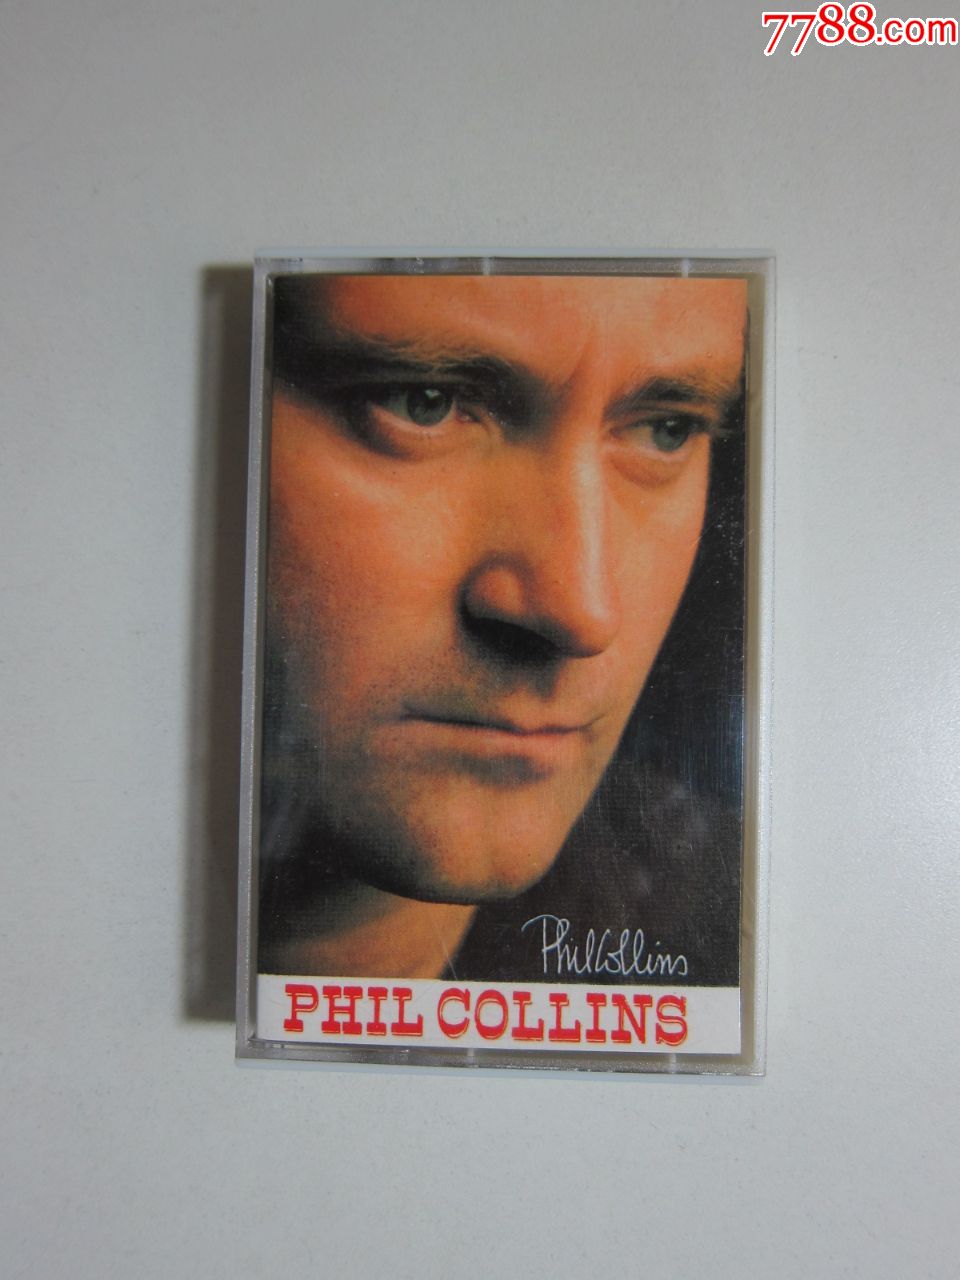 磁带,philcollins